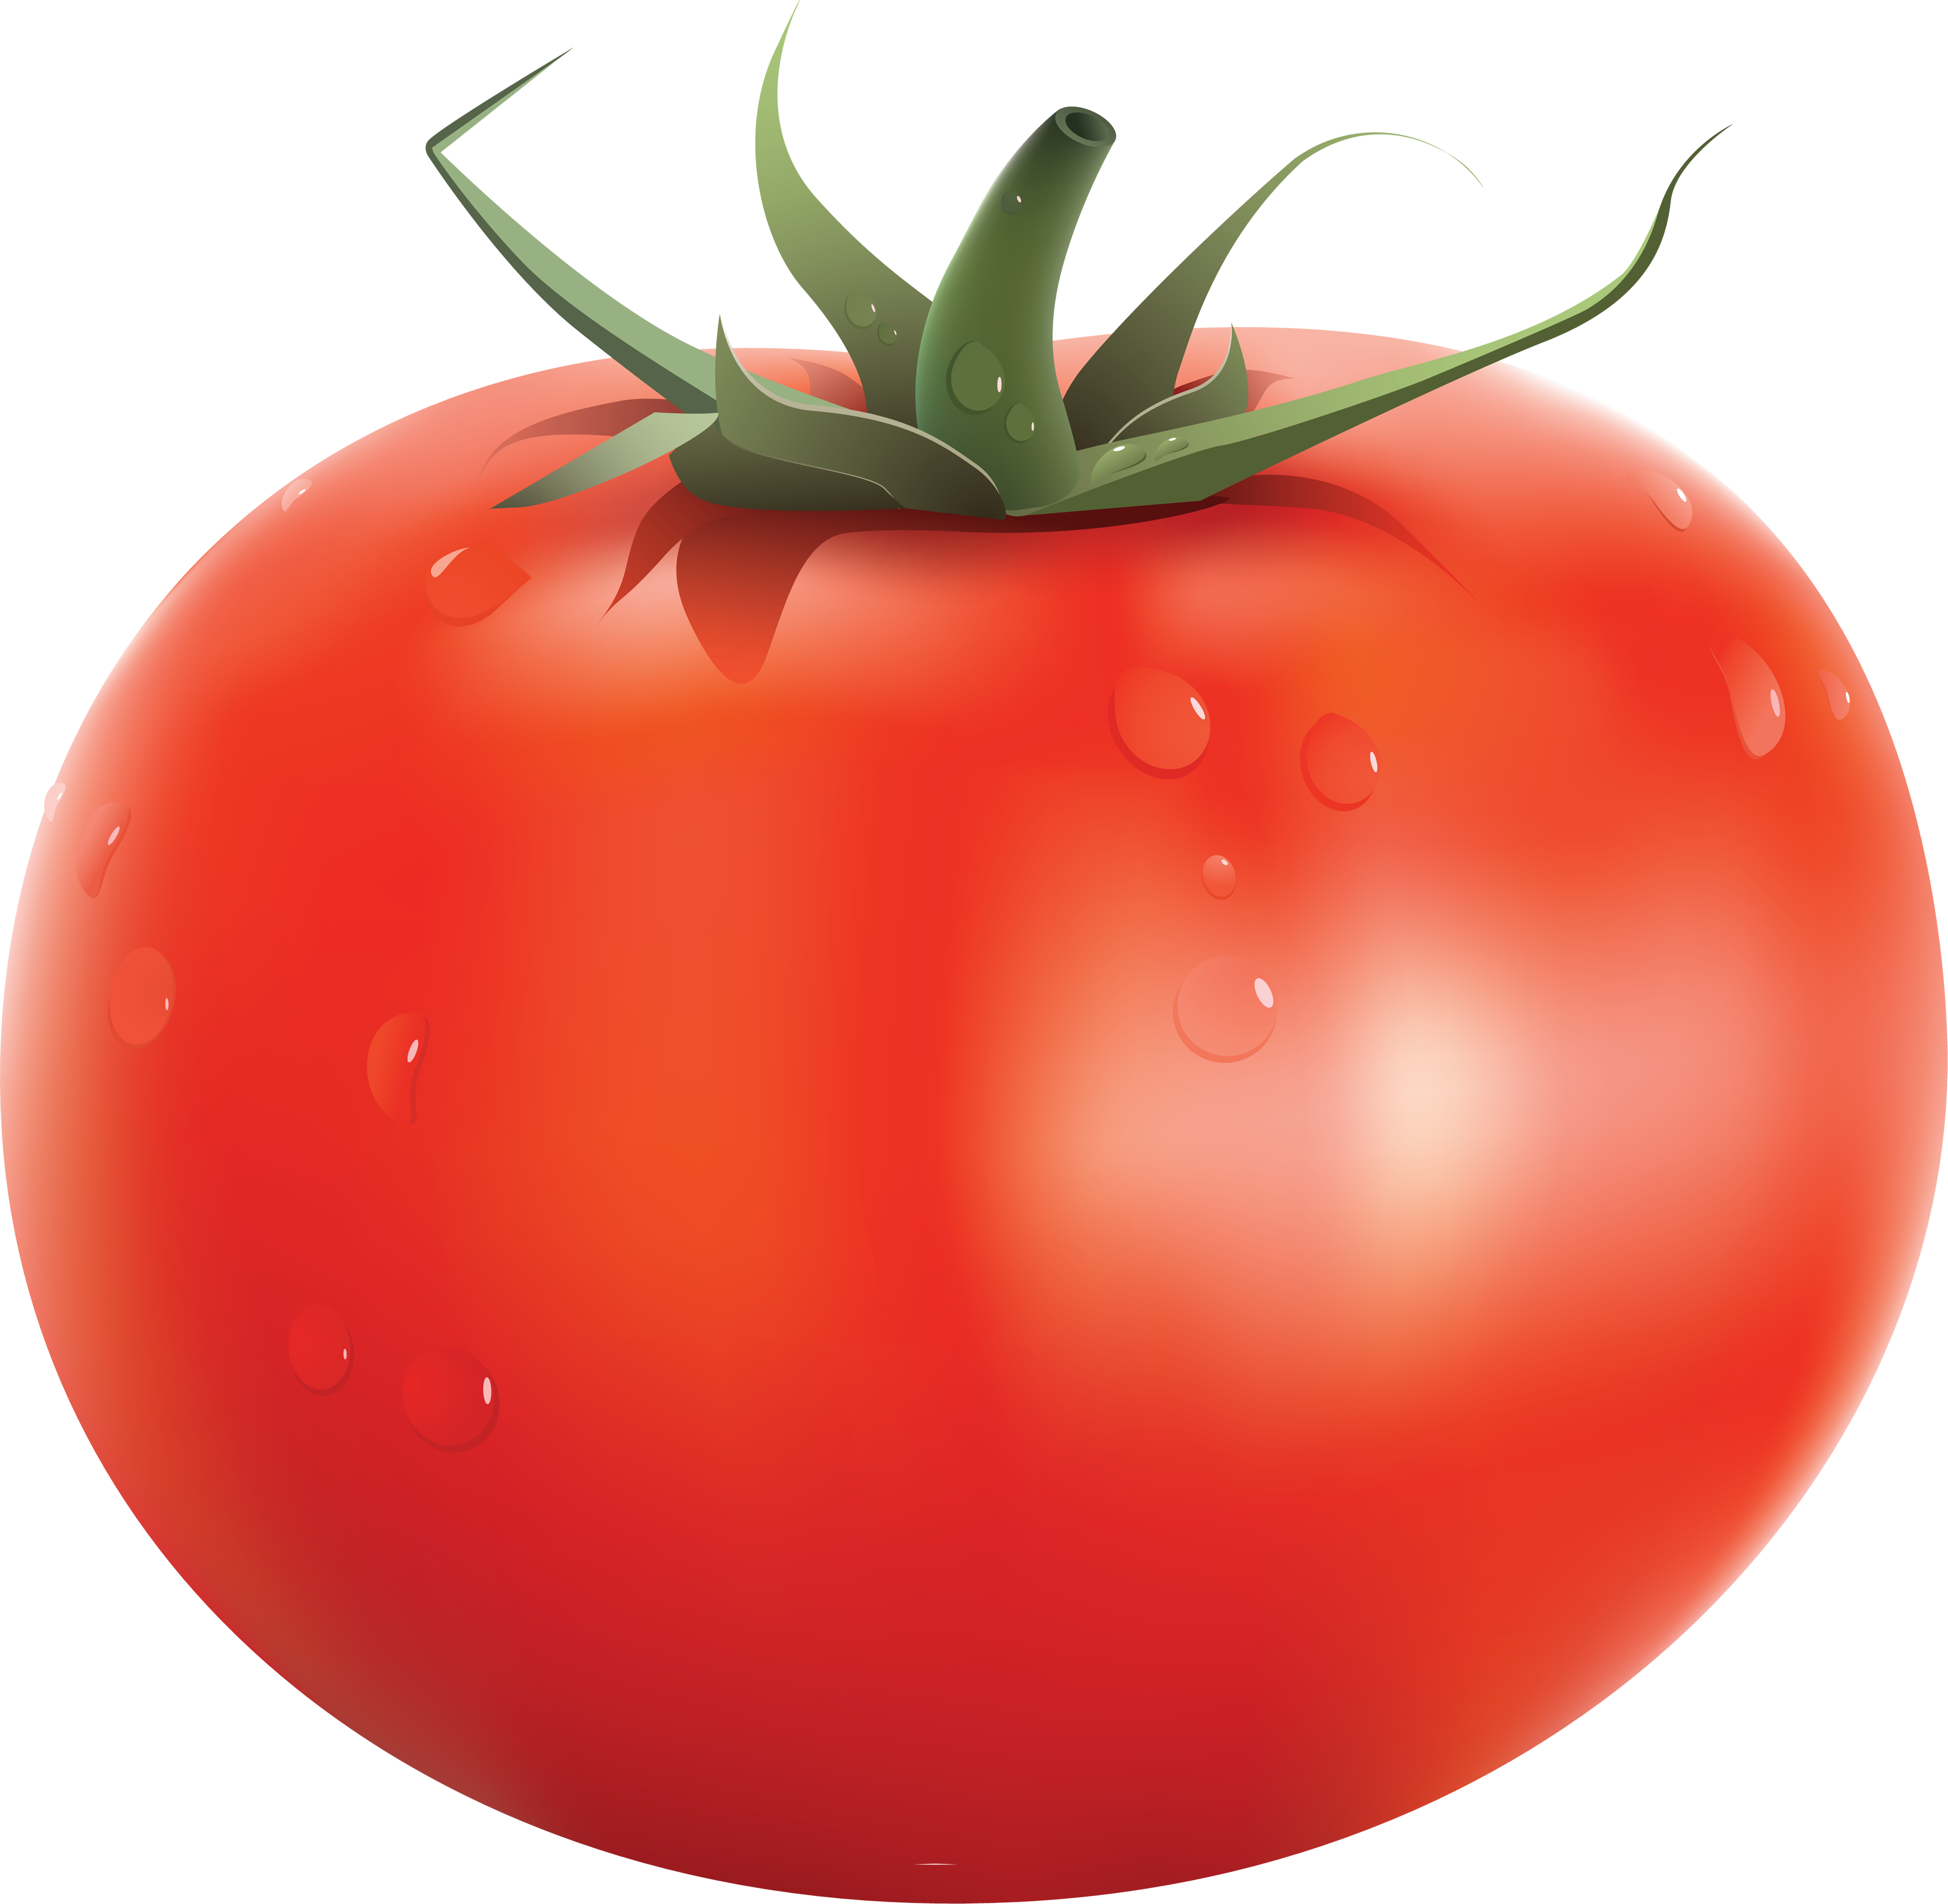 Tomato #14